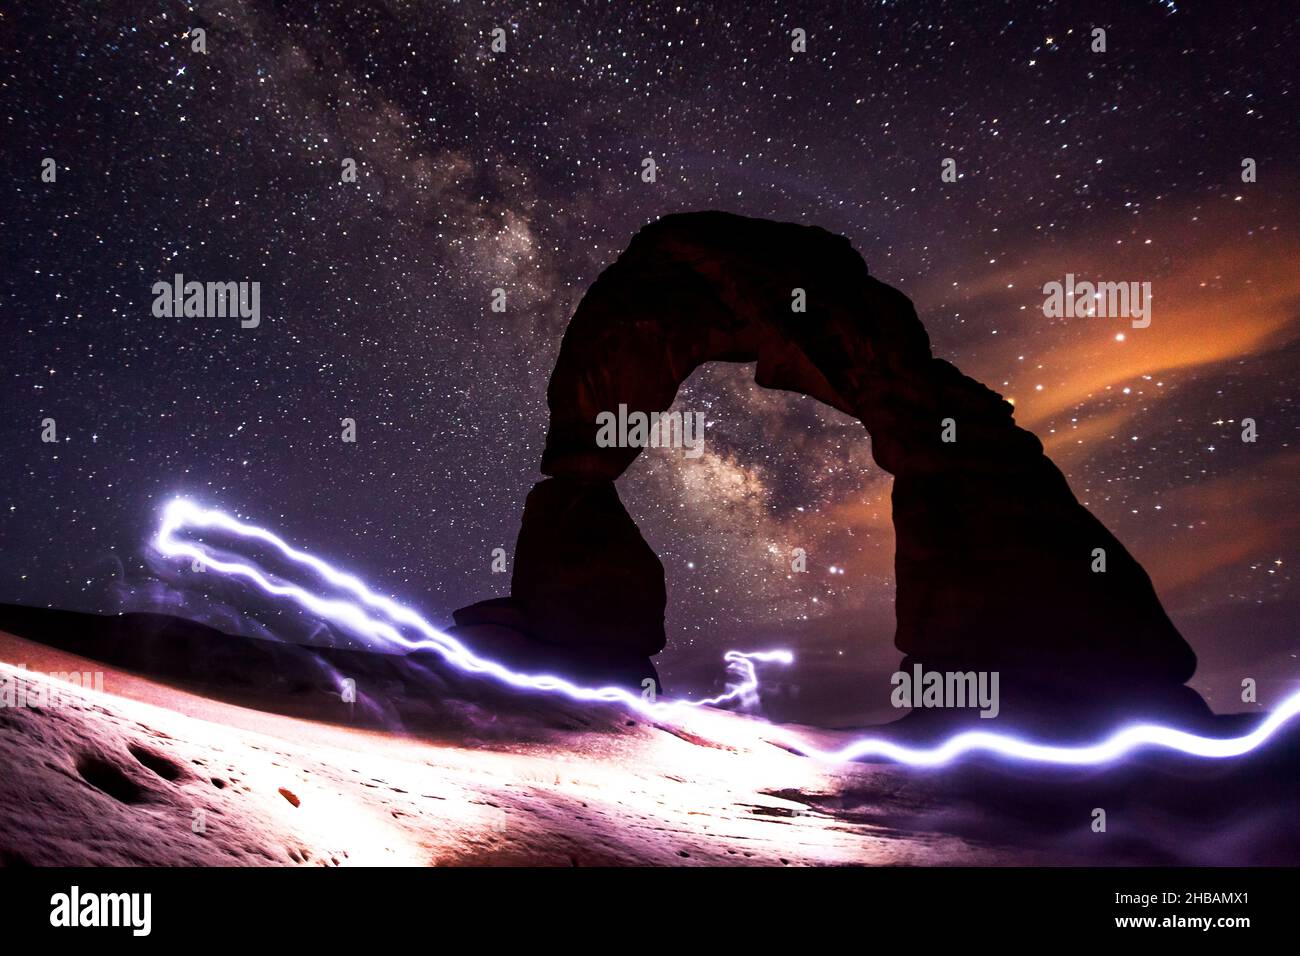 Arco delicato di notte con percorsi leggeri da una torcia da testa; la Via Lattea nel cielo sopra. Arches National Park, Utah, Stati Uniti d'America. Una versione unica e ottimizzata di un'immagine di NPS Ranger JW Frank; Credit: NPS/Jacob W. Frank Foto Stock